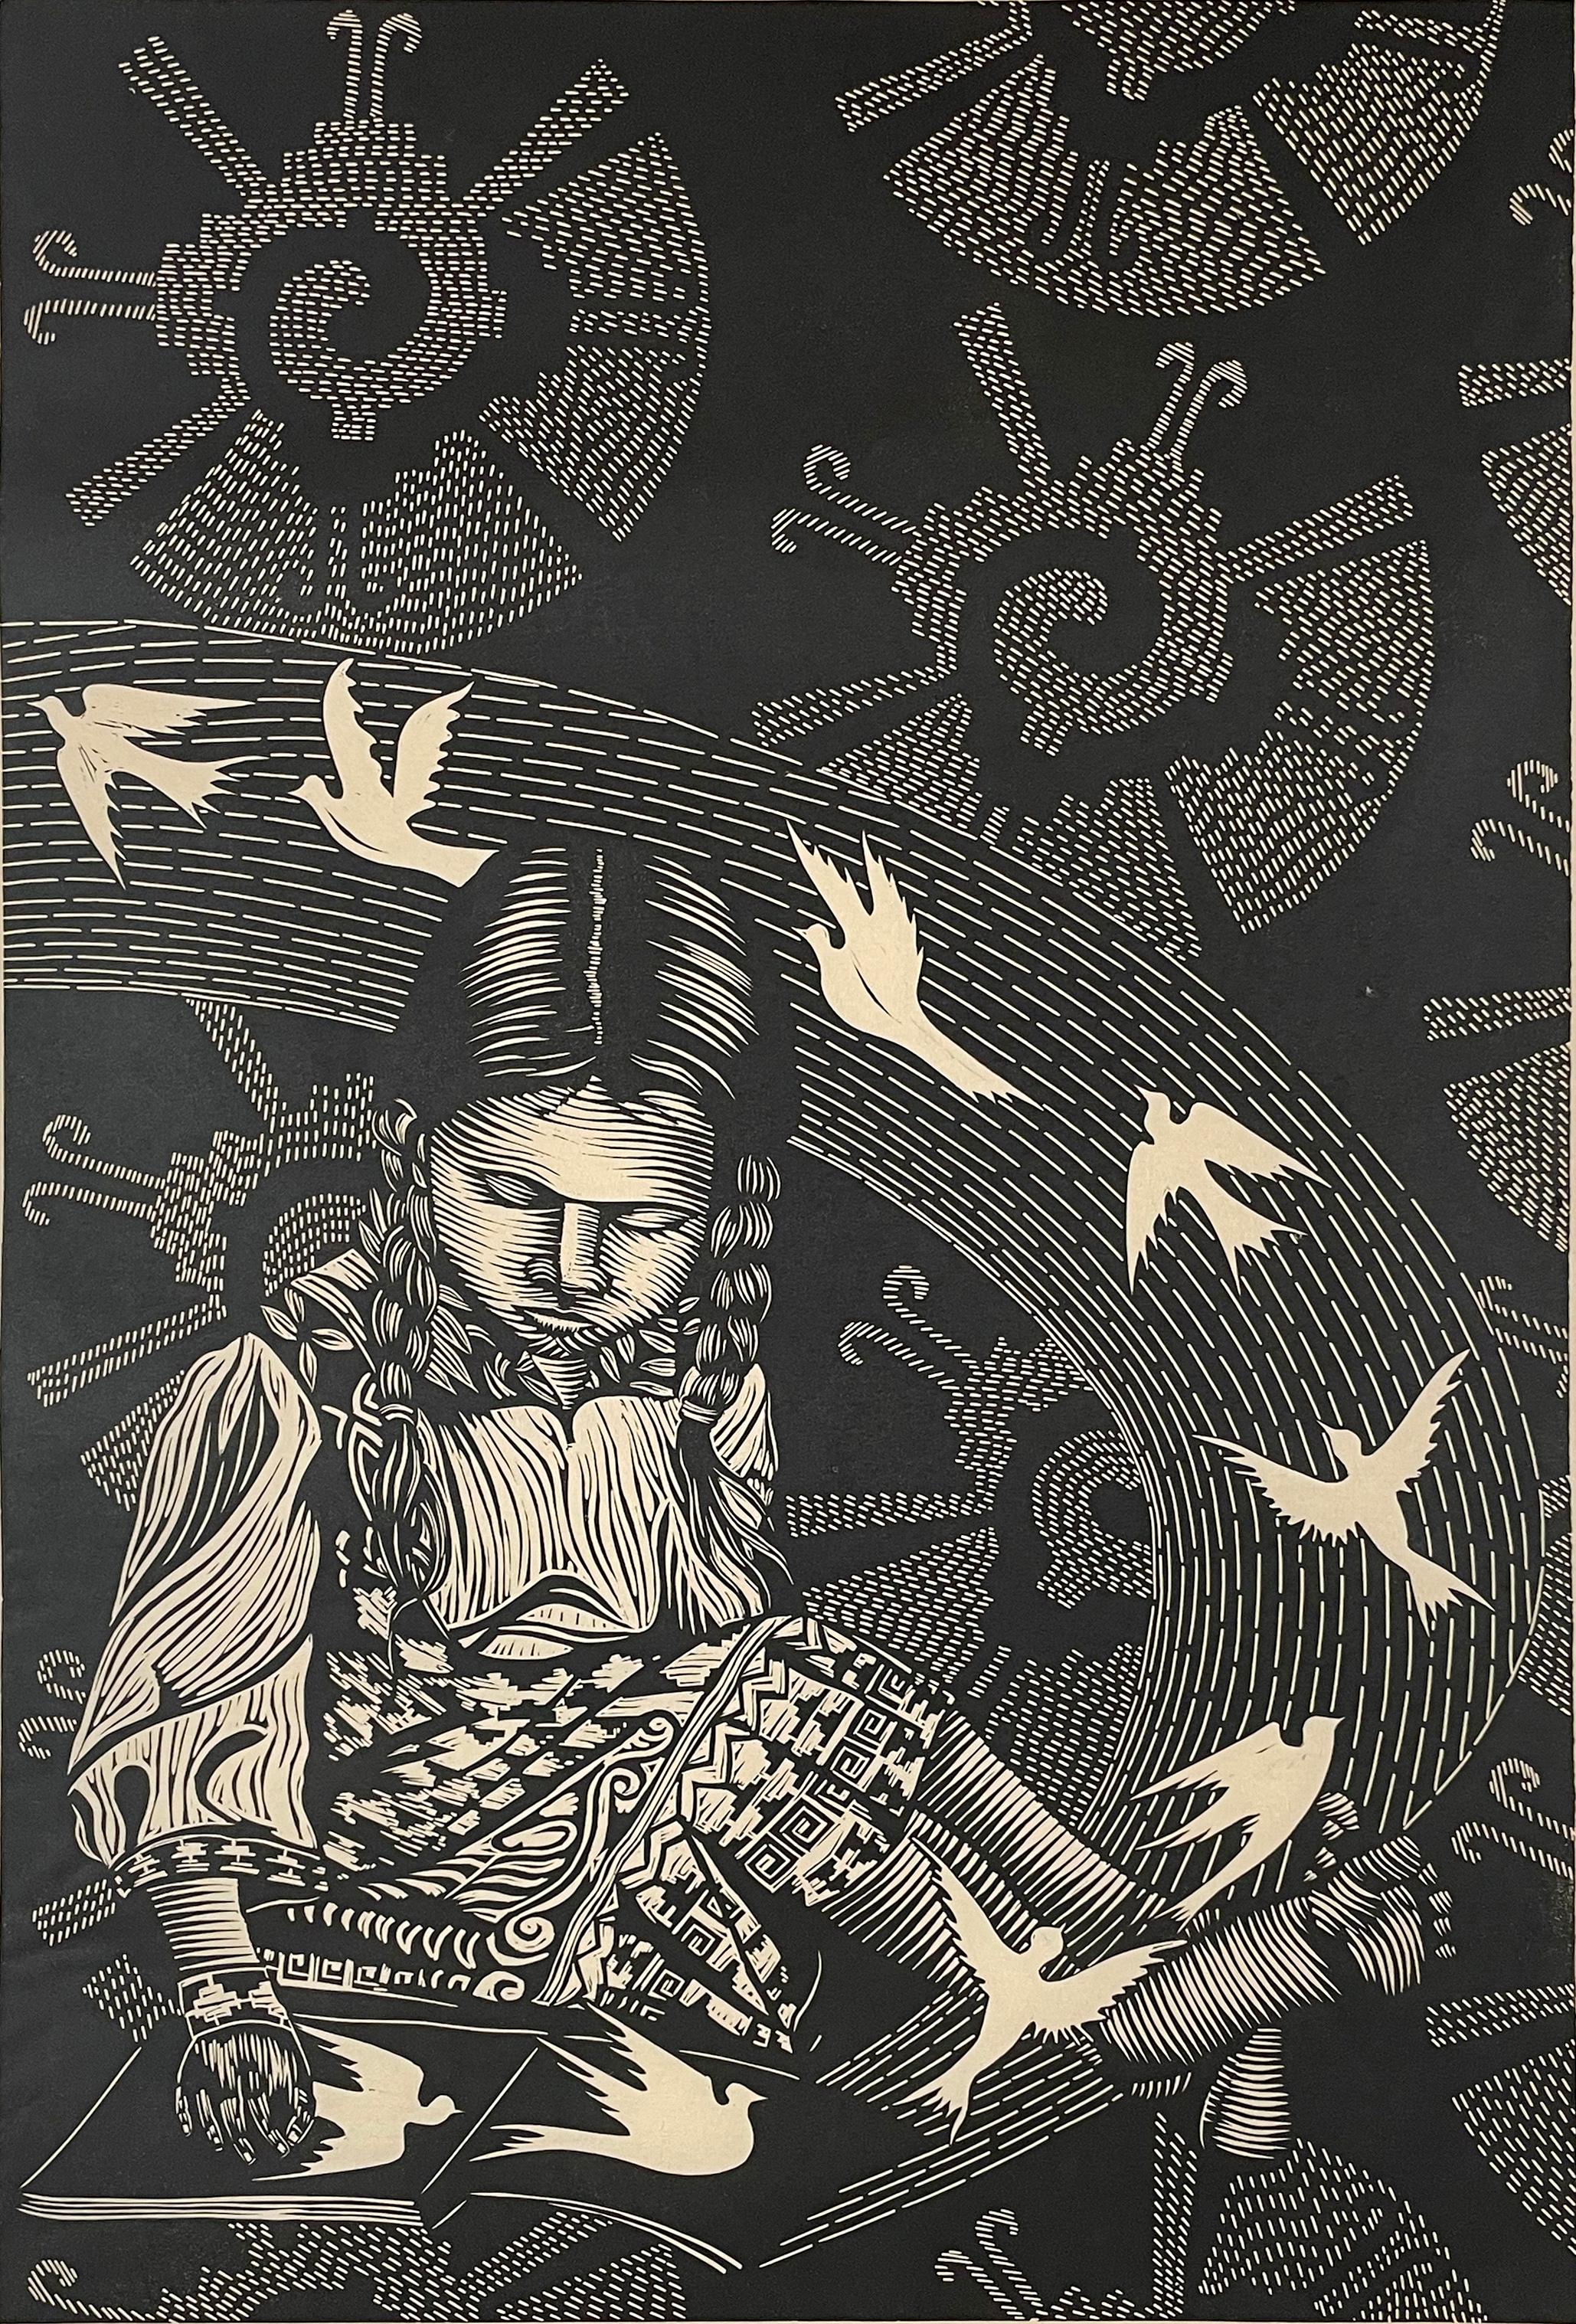 Medium: Linolschnitt
Jahr: 2019
Bildgröße: 24 x 16 Zoll
Auflage von 10 Stück

Junges indigenes Mädchen vor einem Hintergrund, der das Maya-Symbol für Gott enthält, zusammen mit Tauben, die aus einem aufgeschlagenen Buch fliegen.

Als Kulturaktivist,